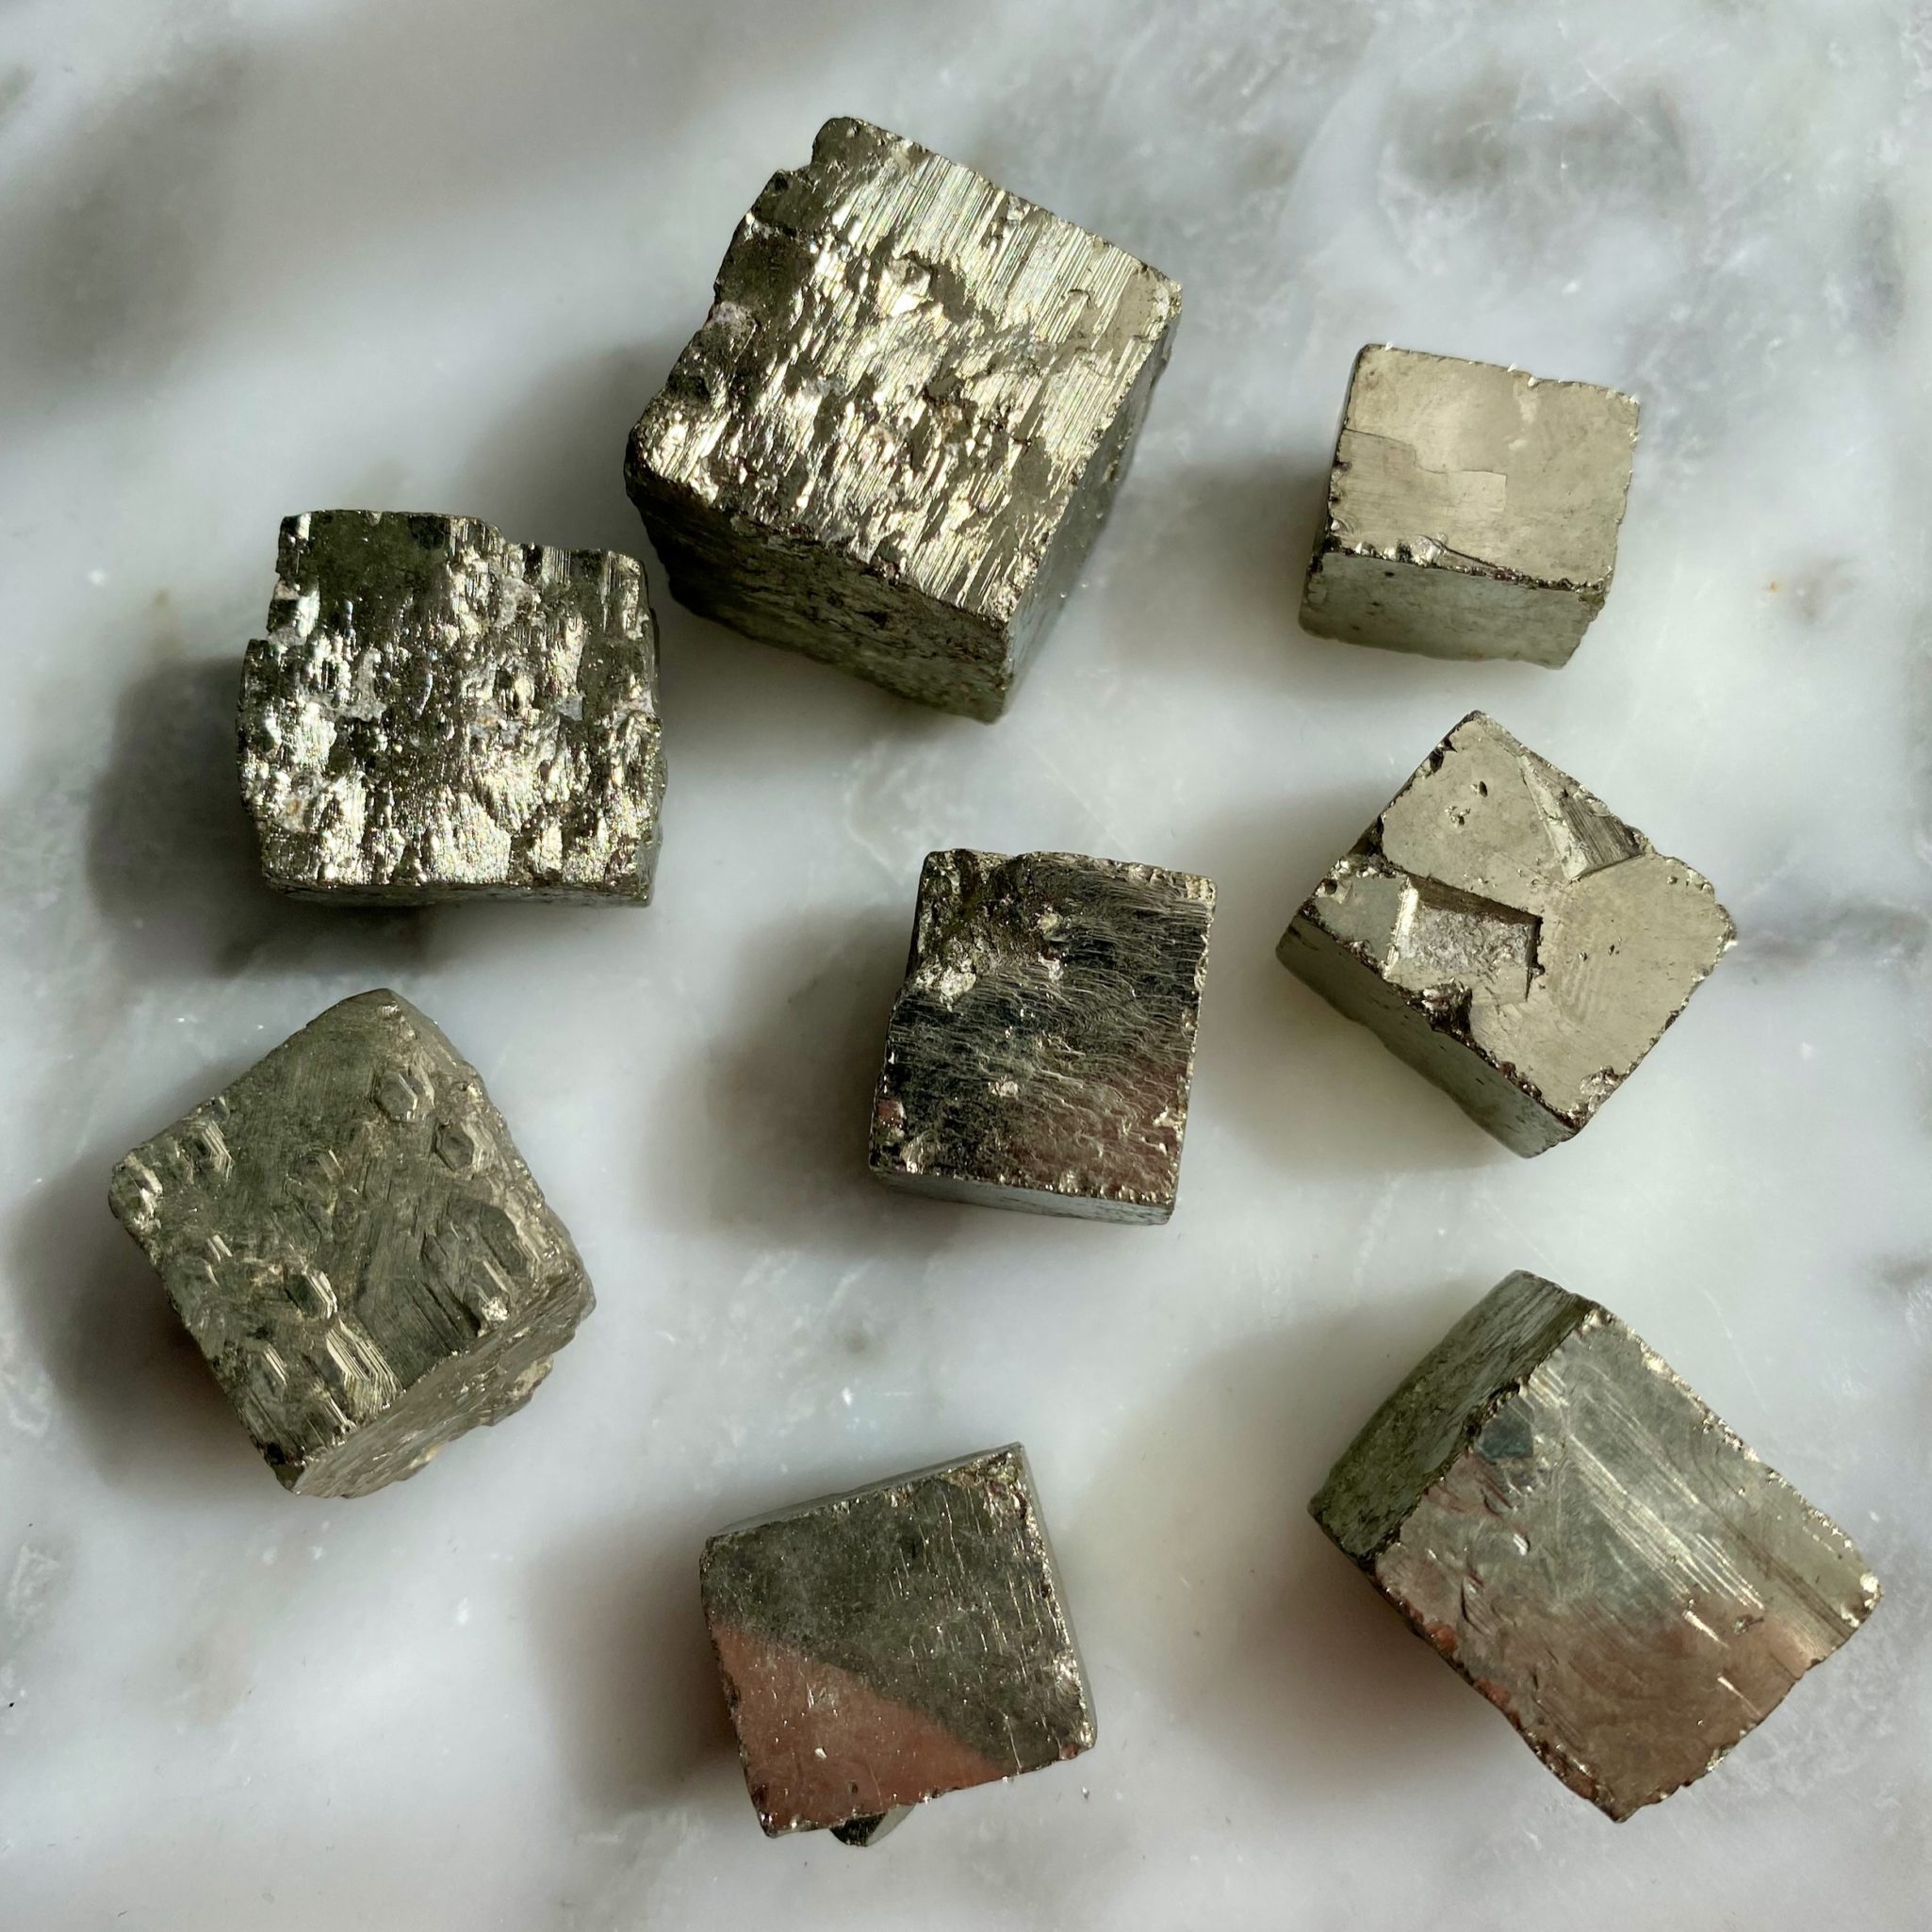 pyrite cube specimen - Spécimen de cube de pyrite